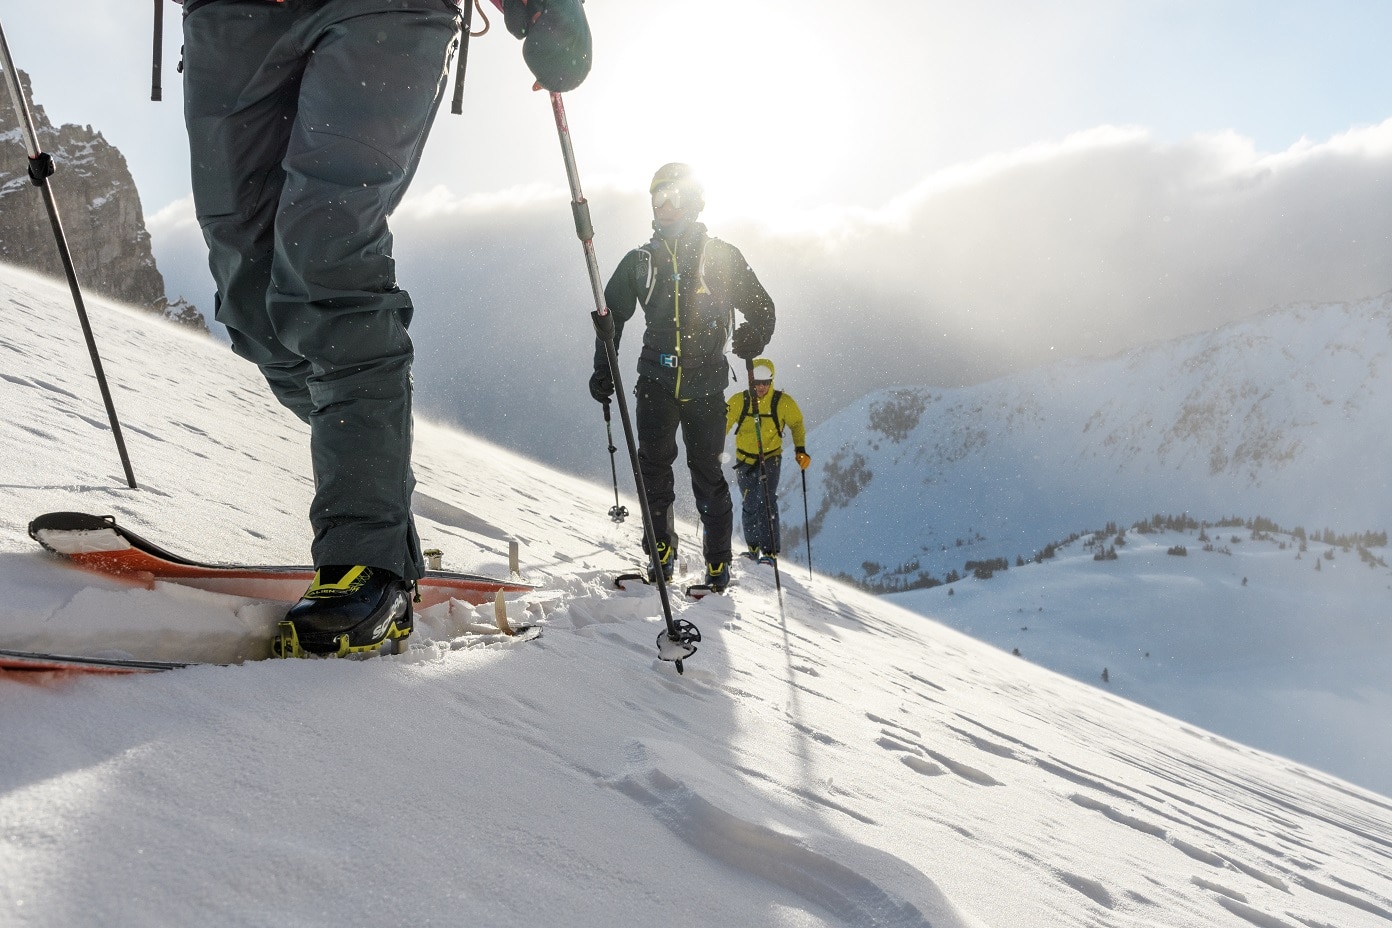 Der aufstiegsorientierte Skitourengeher freut sich über jedes Gramm weniger am Fuß